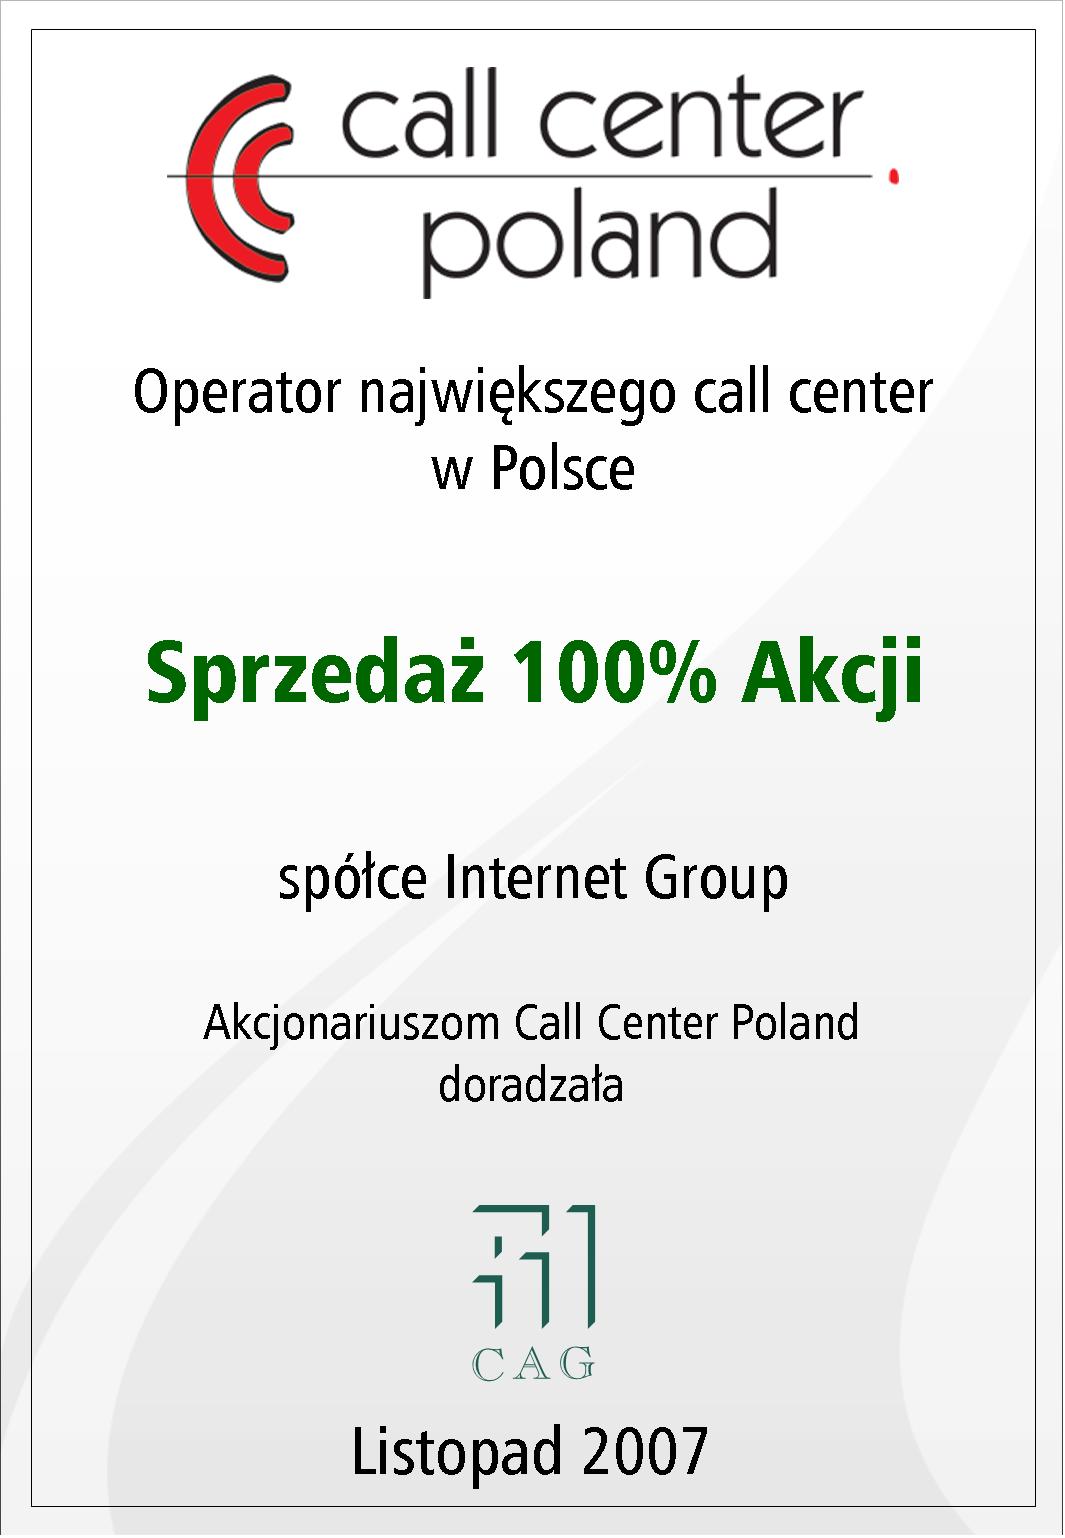 Call Center Poland